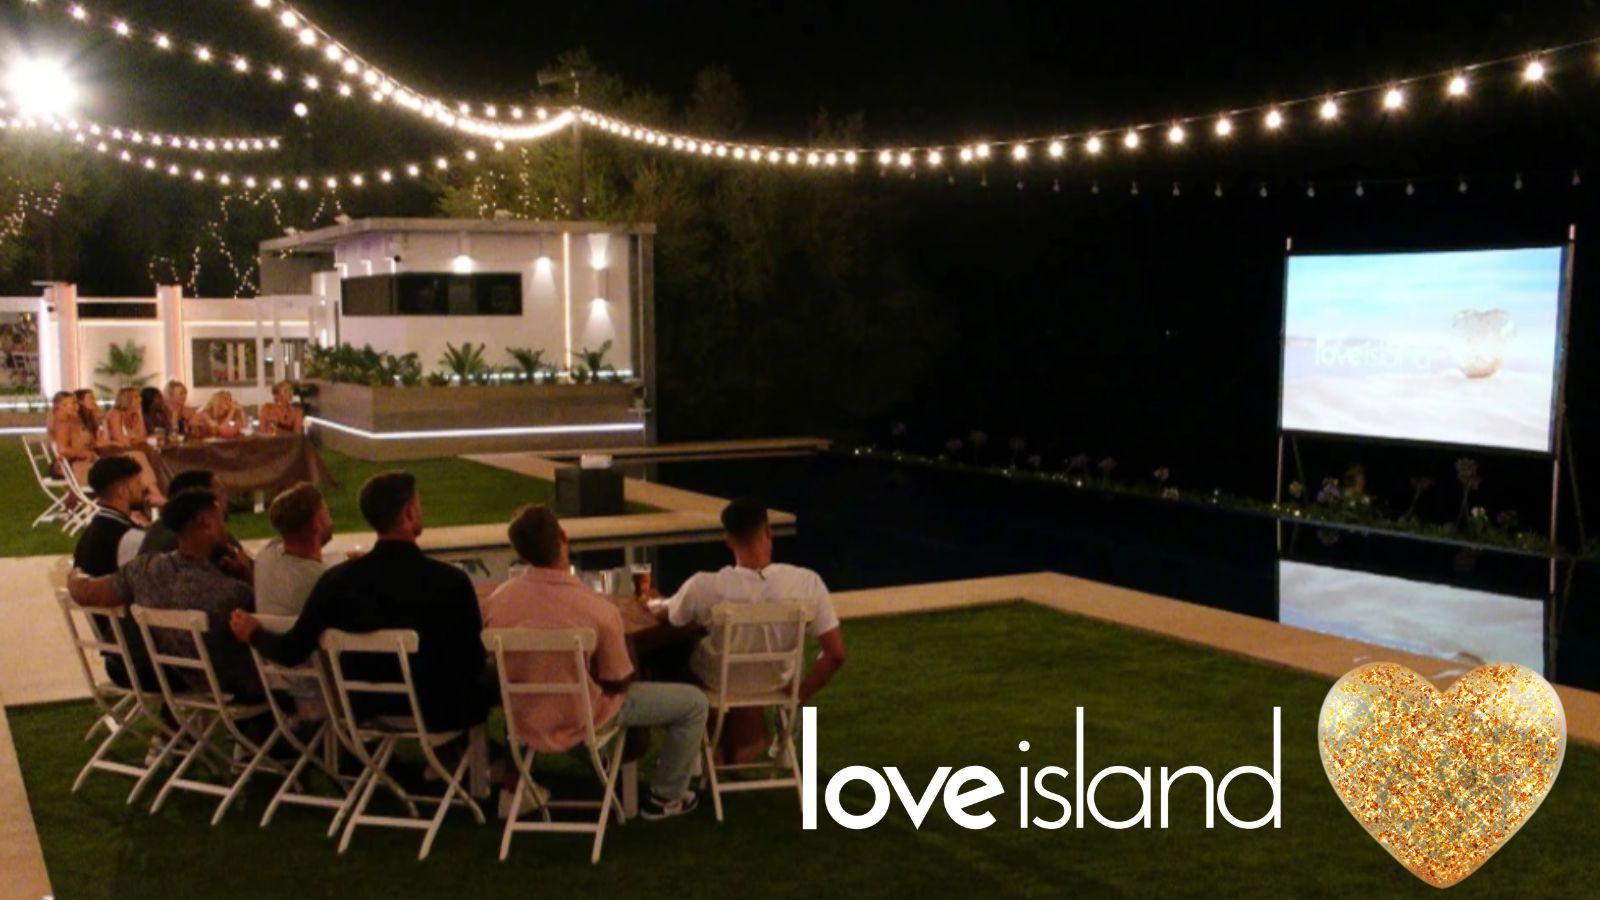 When is Love Island movie night?